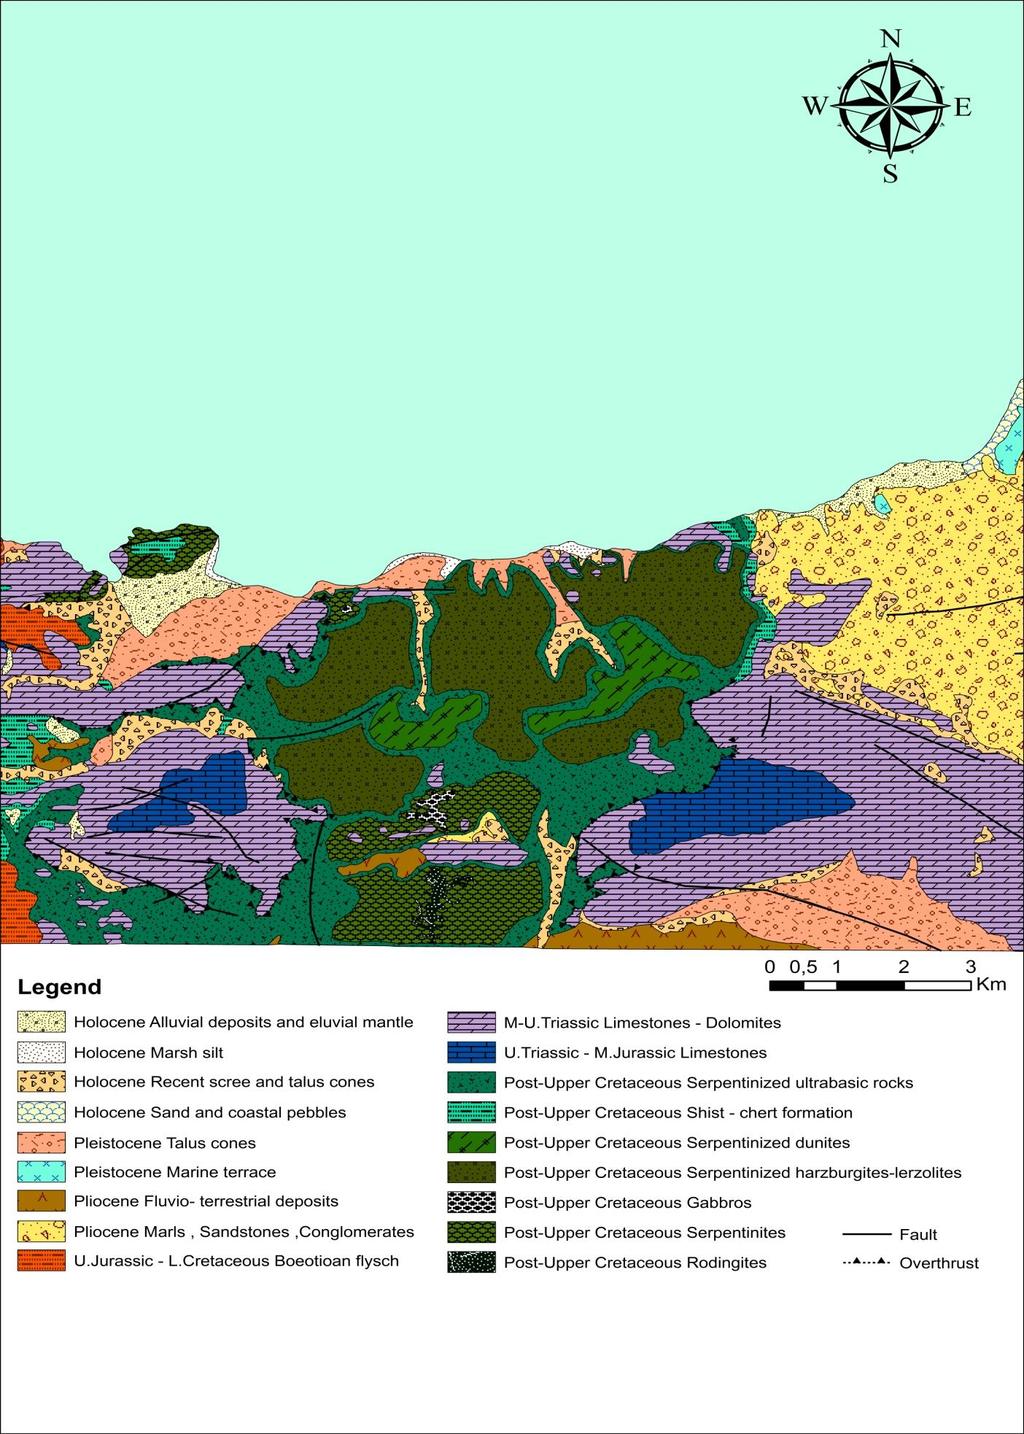 Ακολουθεί ψηφιοποιημένος γεωλογικός χάρτης της ευρύτερης περιοχής των Γερανείων όπου πραγματοποιήθηκε δειγματοληψία για τη παρούσα διατριβή με την επιμέρους λιθολογία που προέκυψε μετά από